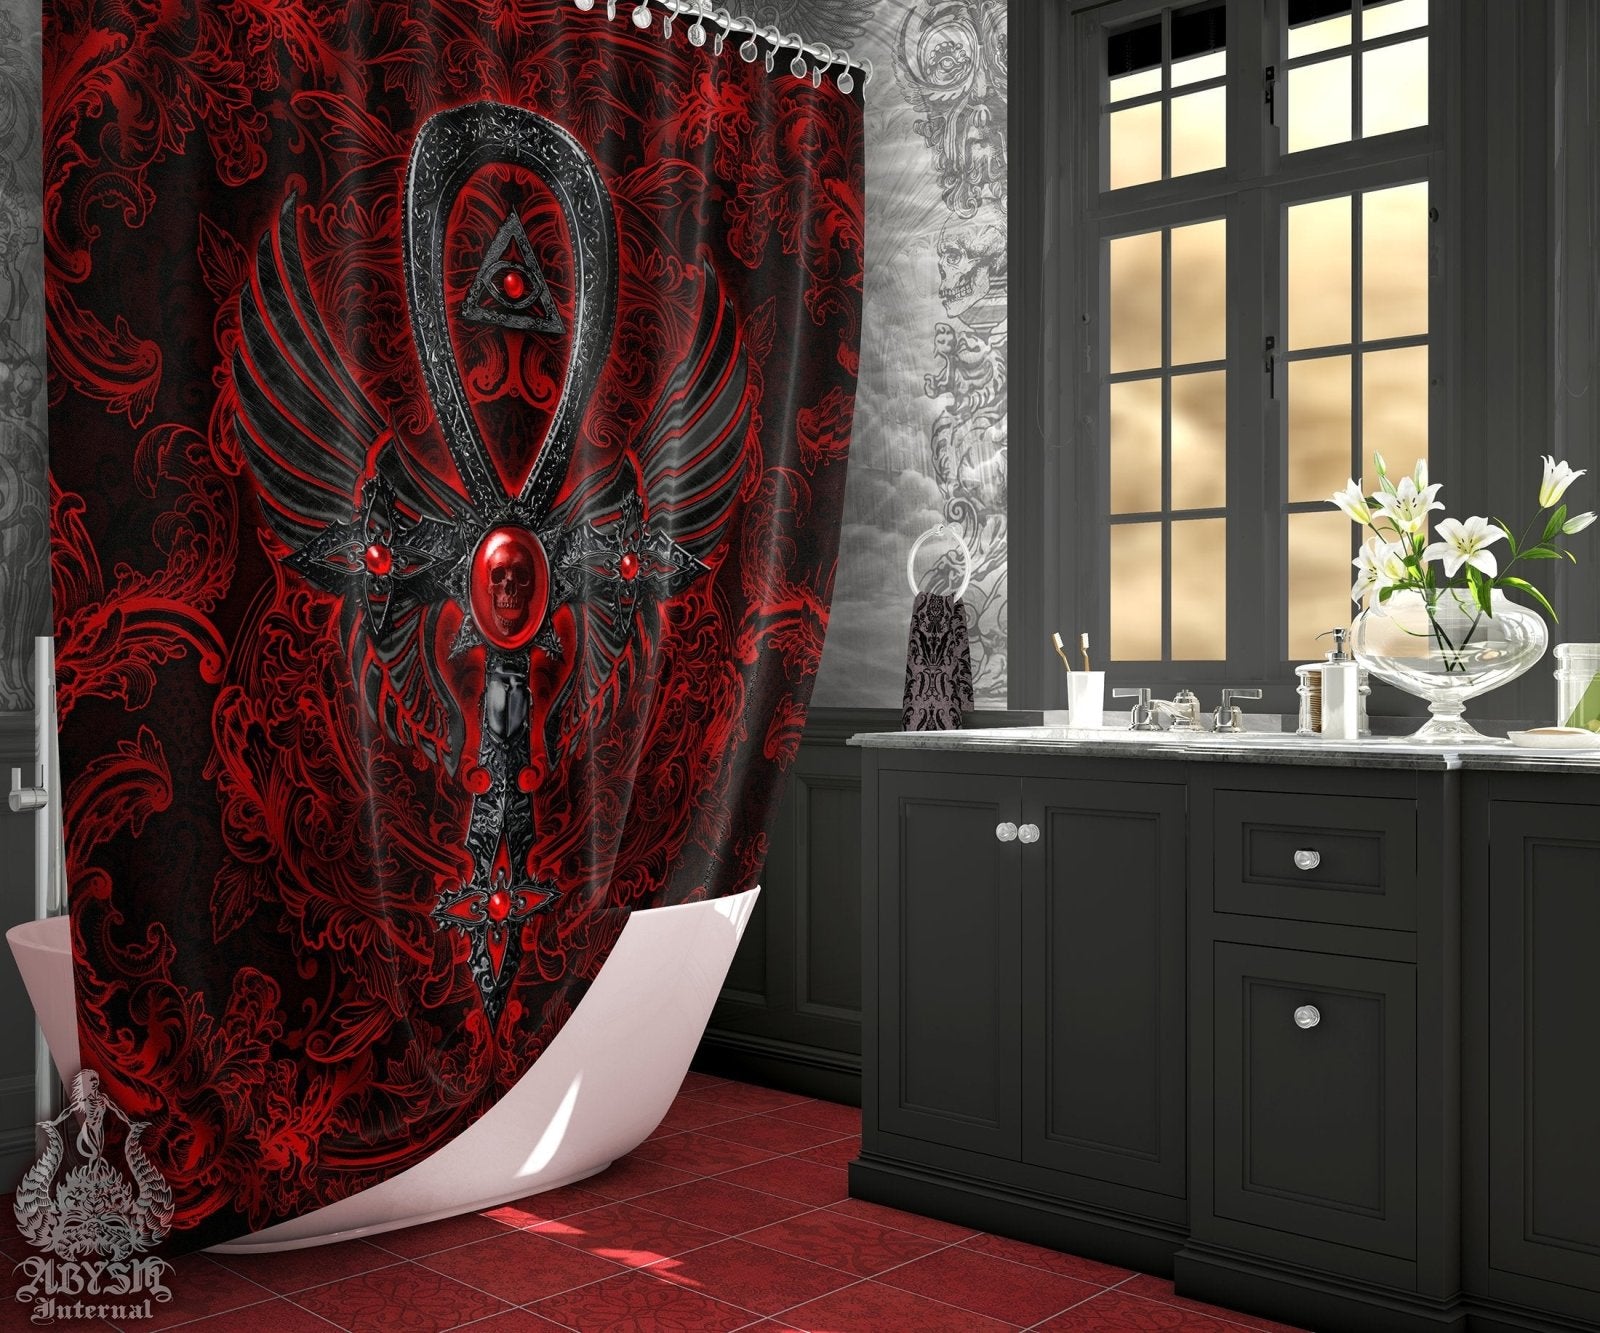 Gothic Shower Curtain, Goth Ankh Cross, Dark Bathroom Decor, Occult - Black - Abysm Internal